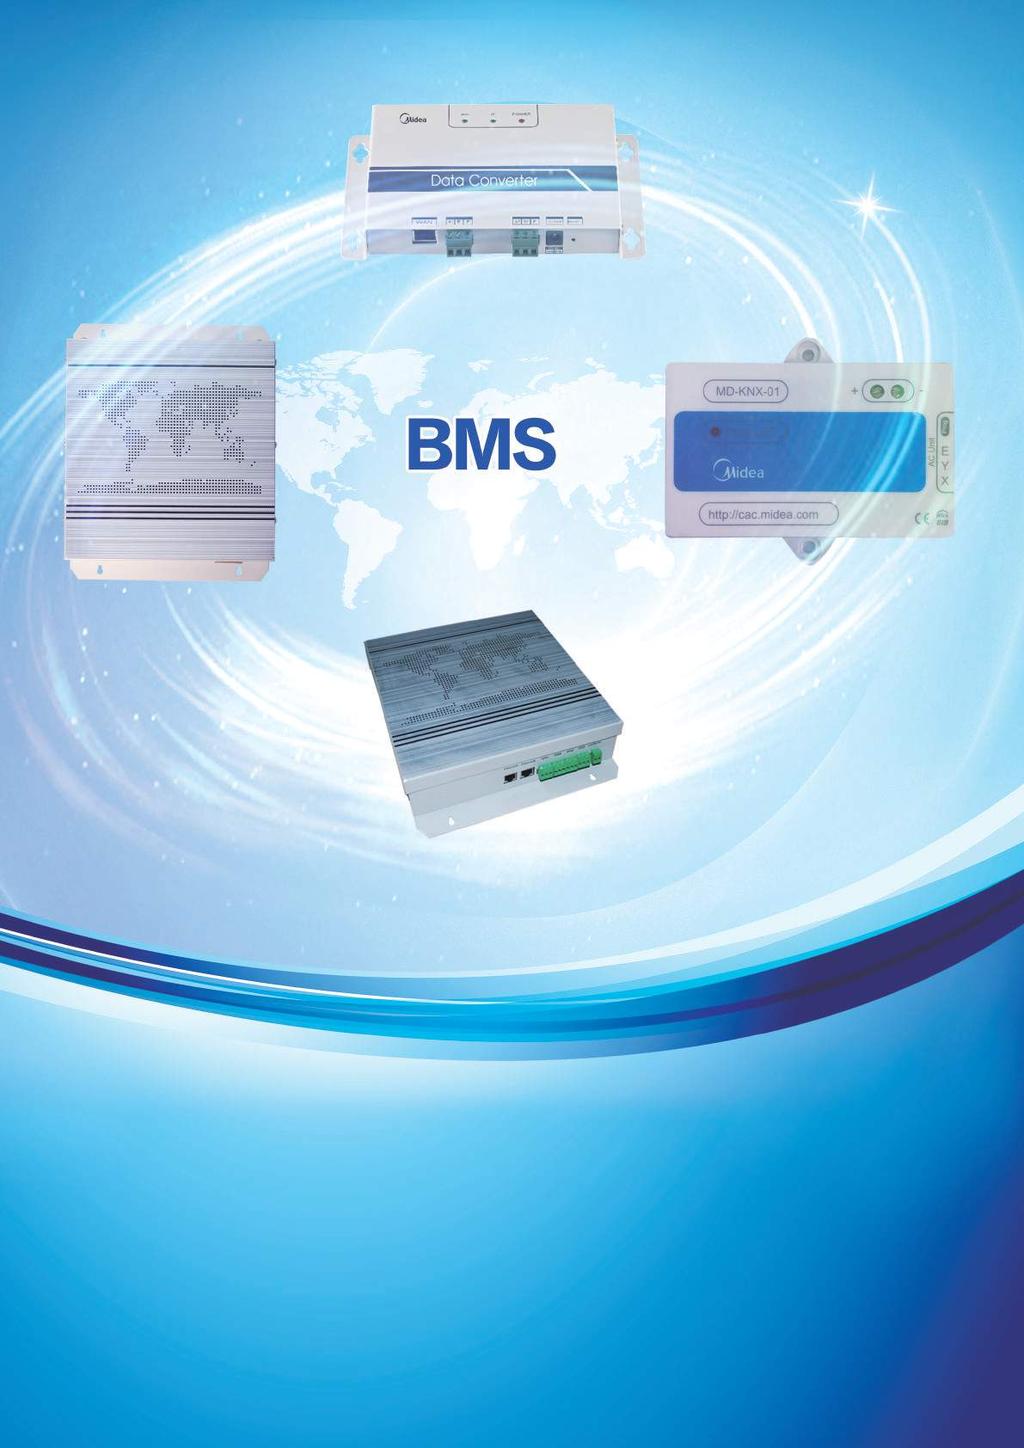 GAMA INDUSTRIAL O que é o BMS? O interface BMS contém um protocolo de comunicações autómato, interligando através de rede todos os sistemas e periféricos associado.